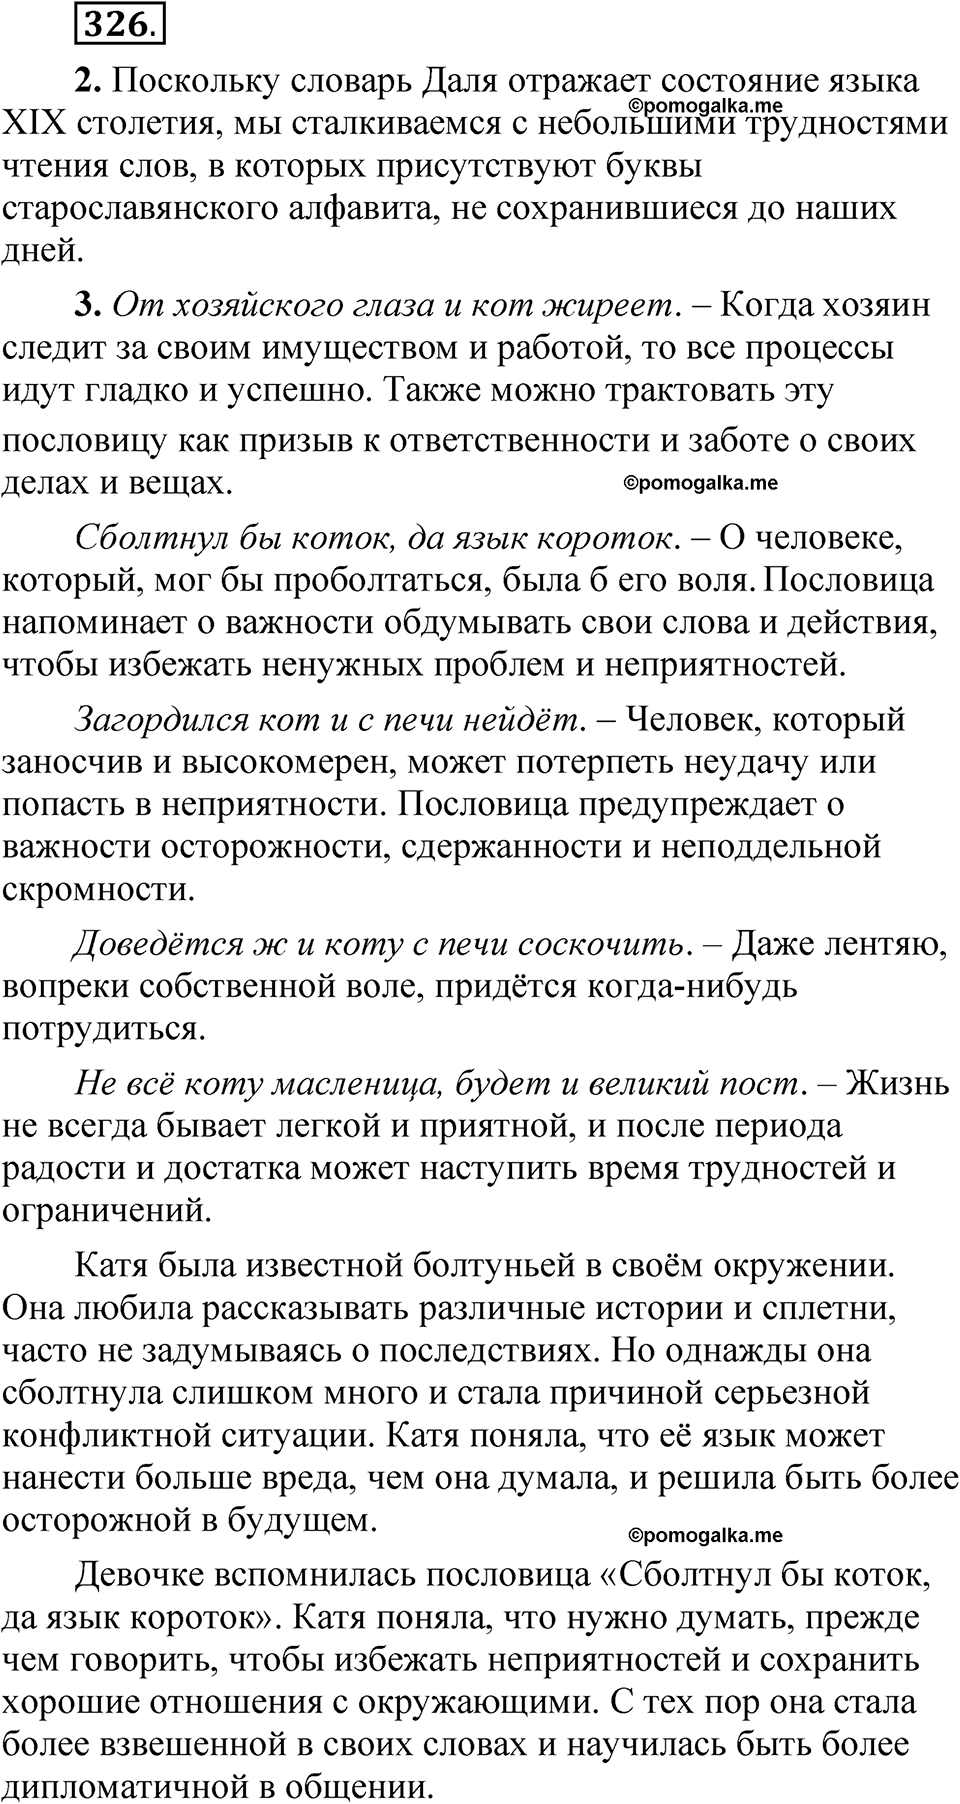 страница 234 упражнение 326 русский язык 5 класс Быстрова, Кибирева 1 часть 2021 год